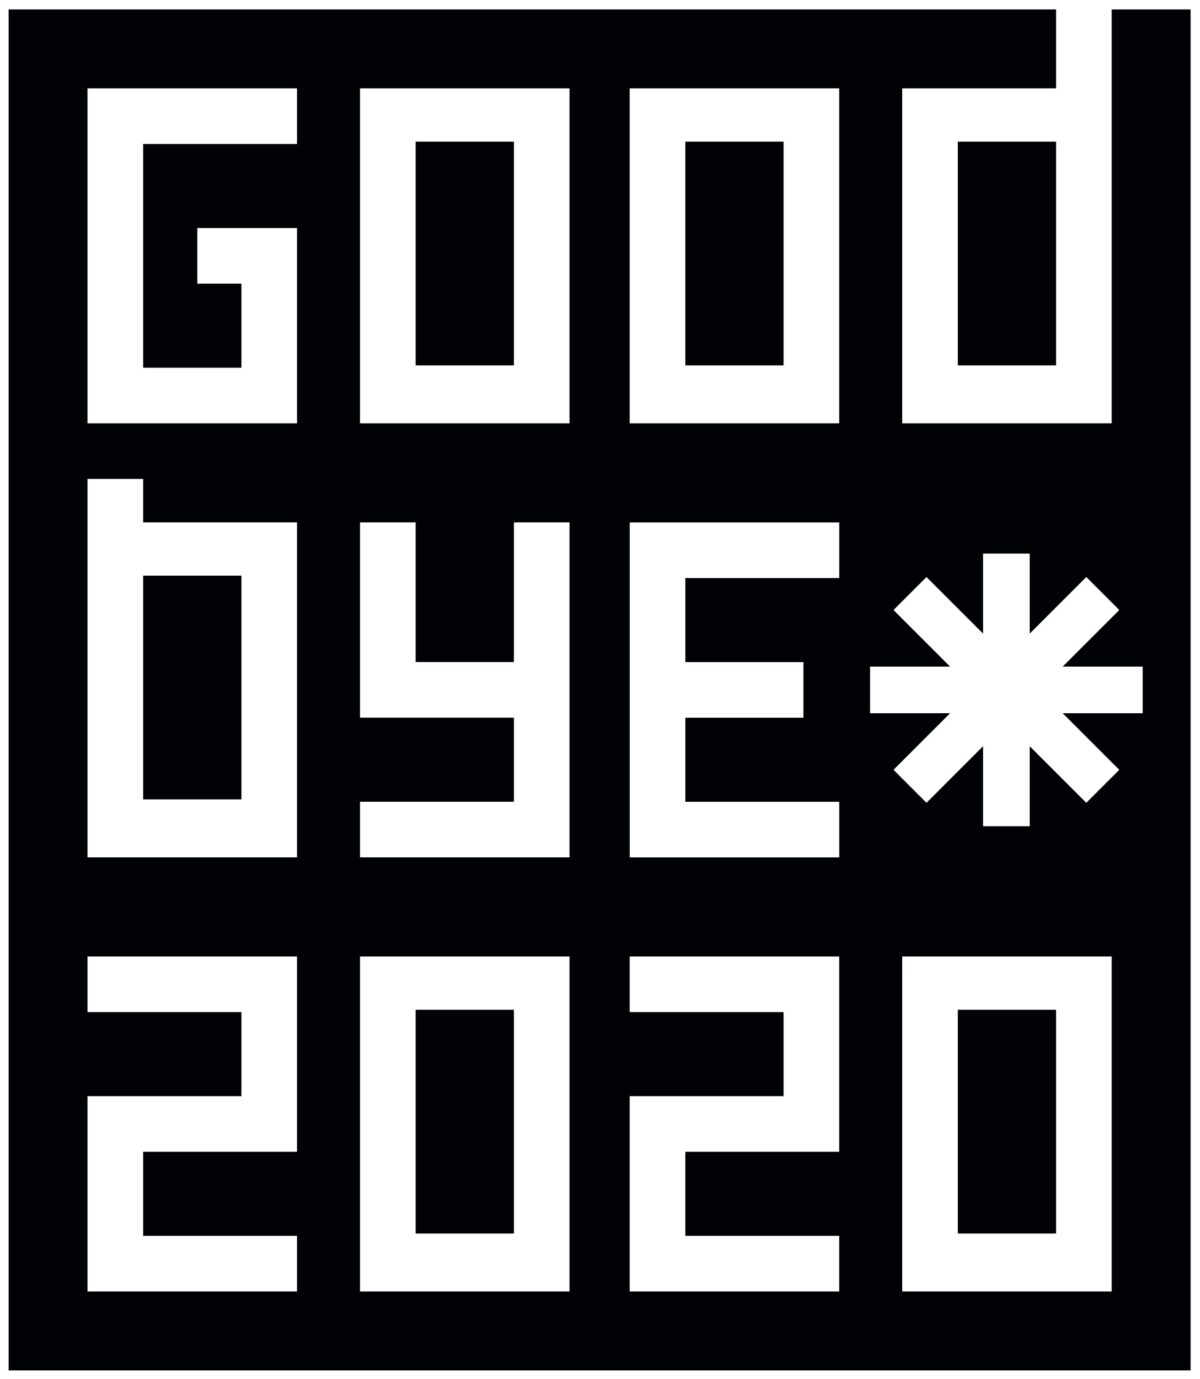 Goodbye 2020